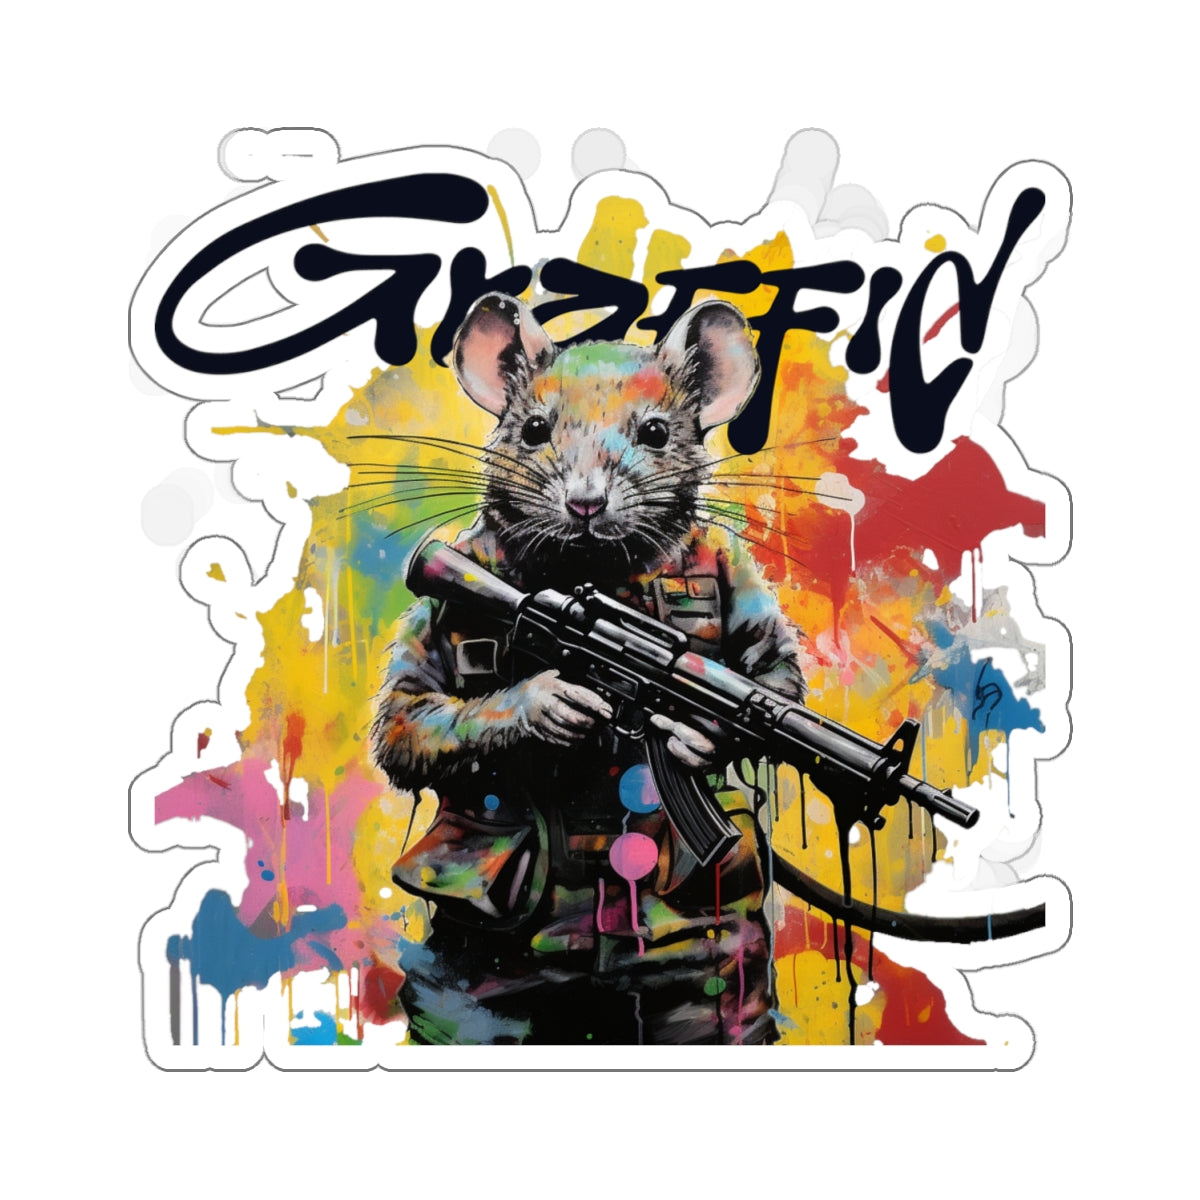 Graffid Stickers: 'Make Art Not War' Edition